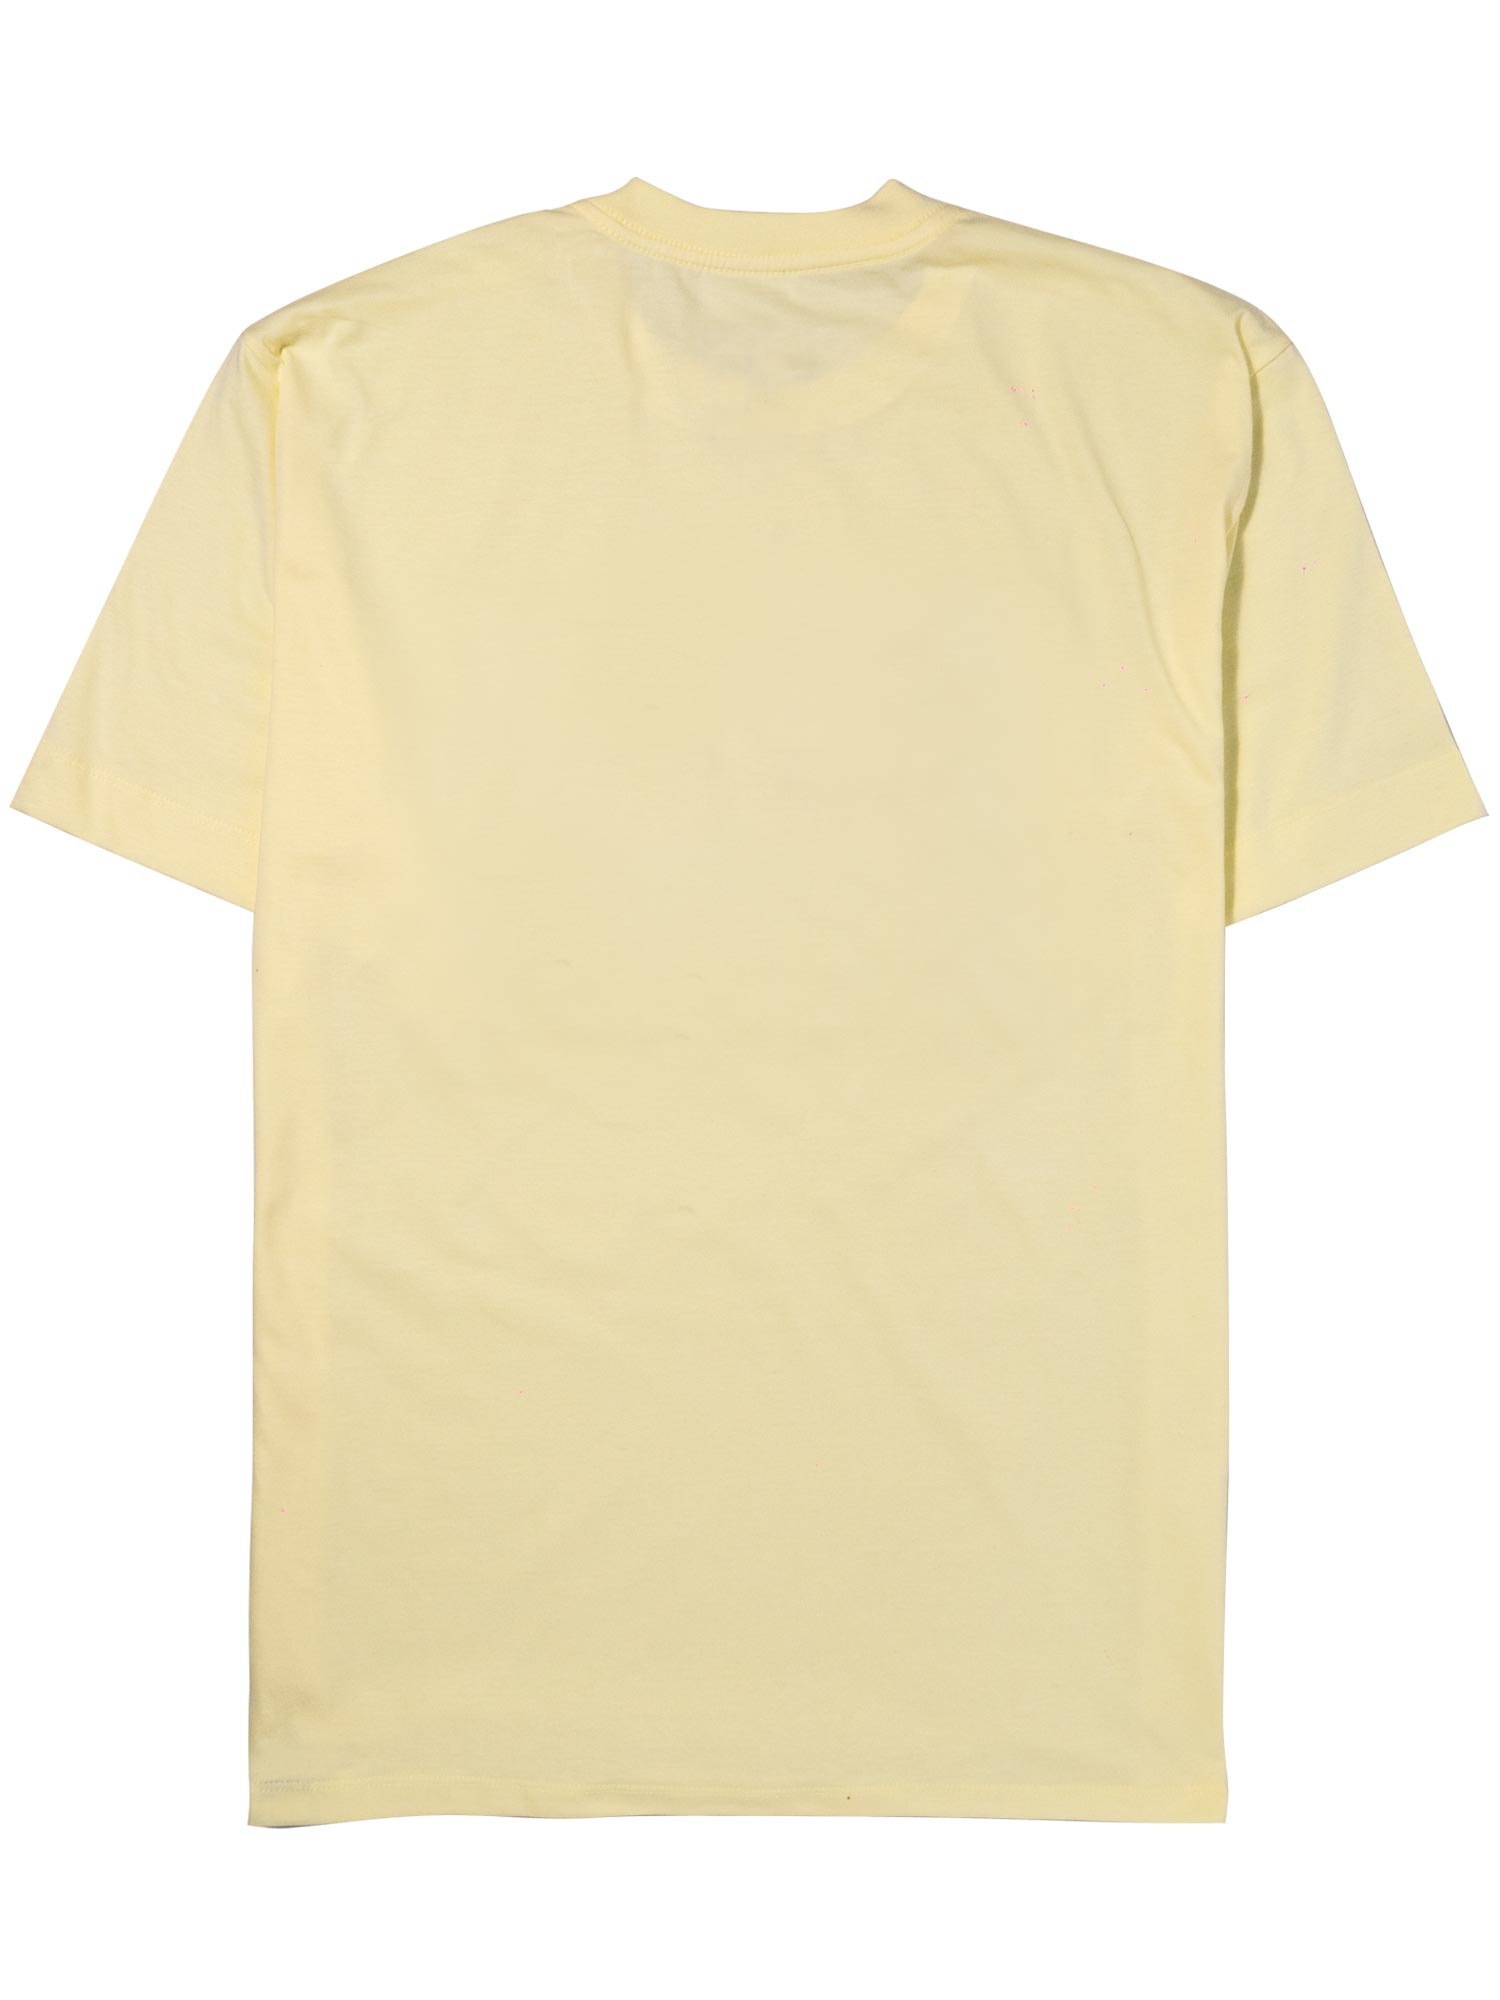 Camiseta-Future-Flag-Amarela-Costas